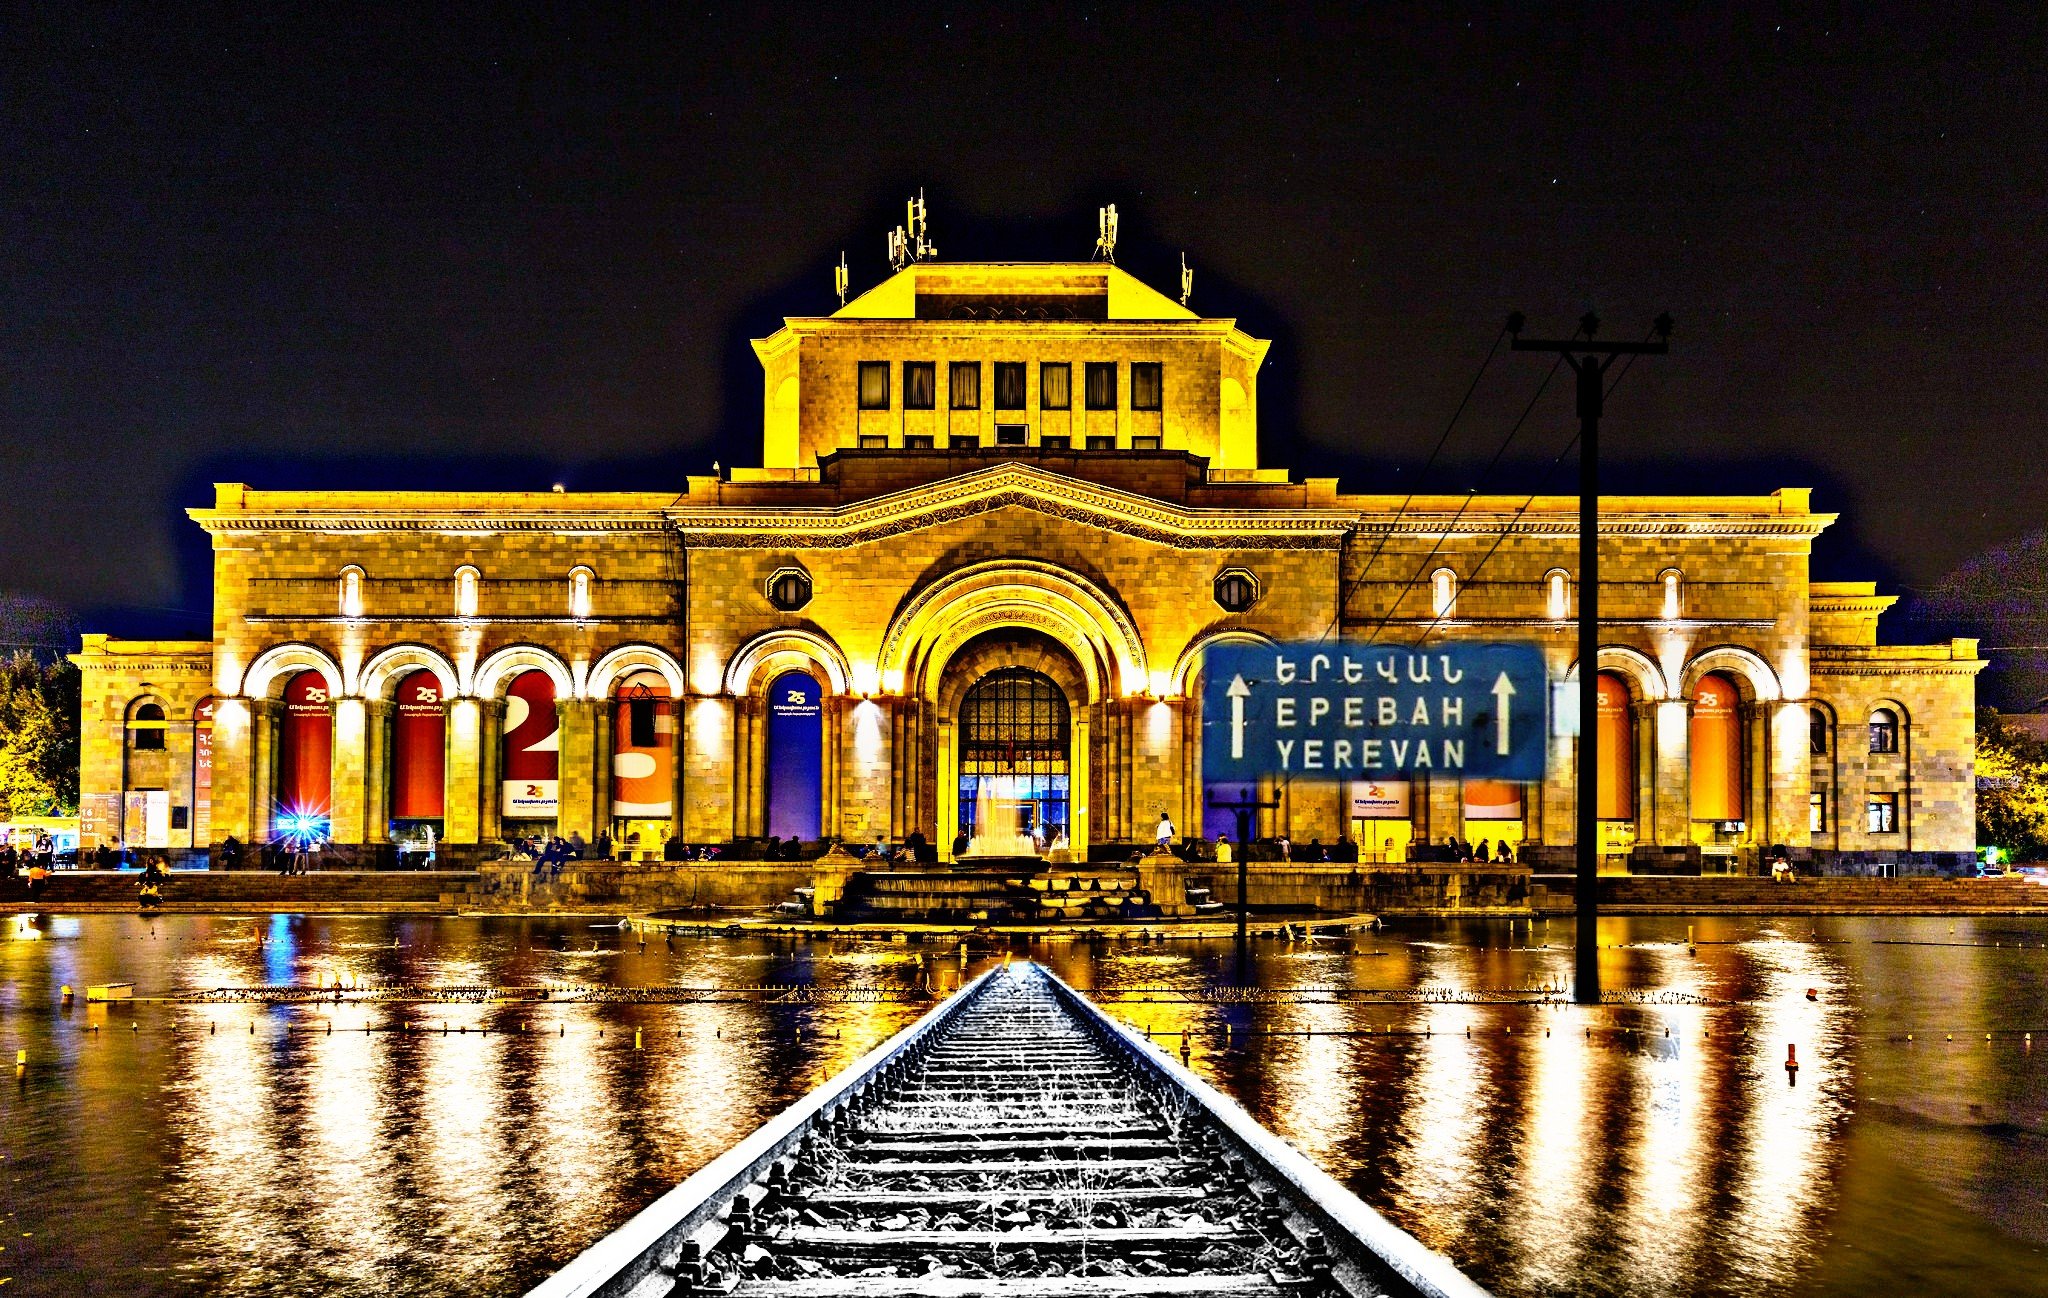 Ереван украина. Ночной вокзал Еревана. Армения Ереван площадь Республики. Железнодорожный вокзал Ереван. Армения Ереван ЖД вокзал.